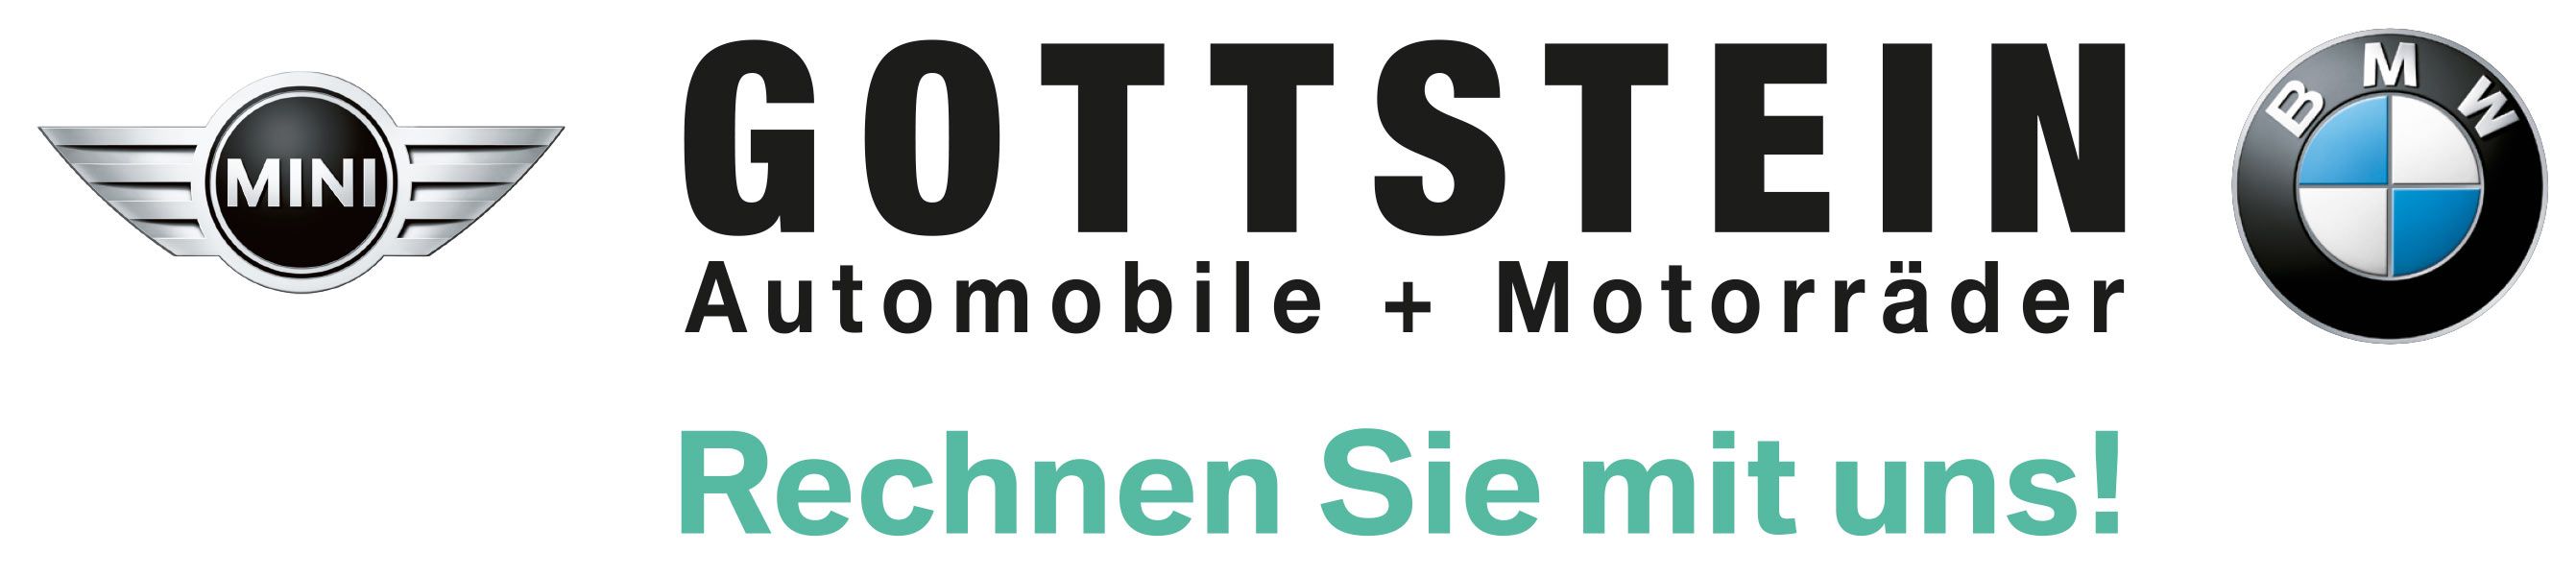 BMW Gottstein | Automobile & Motorräder